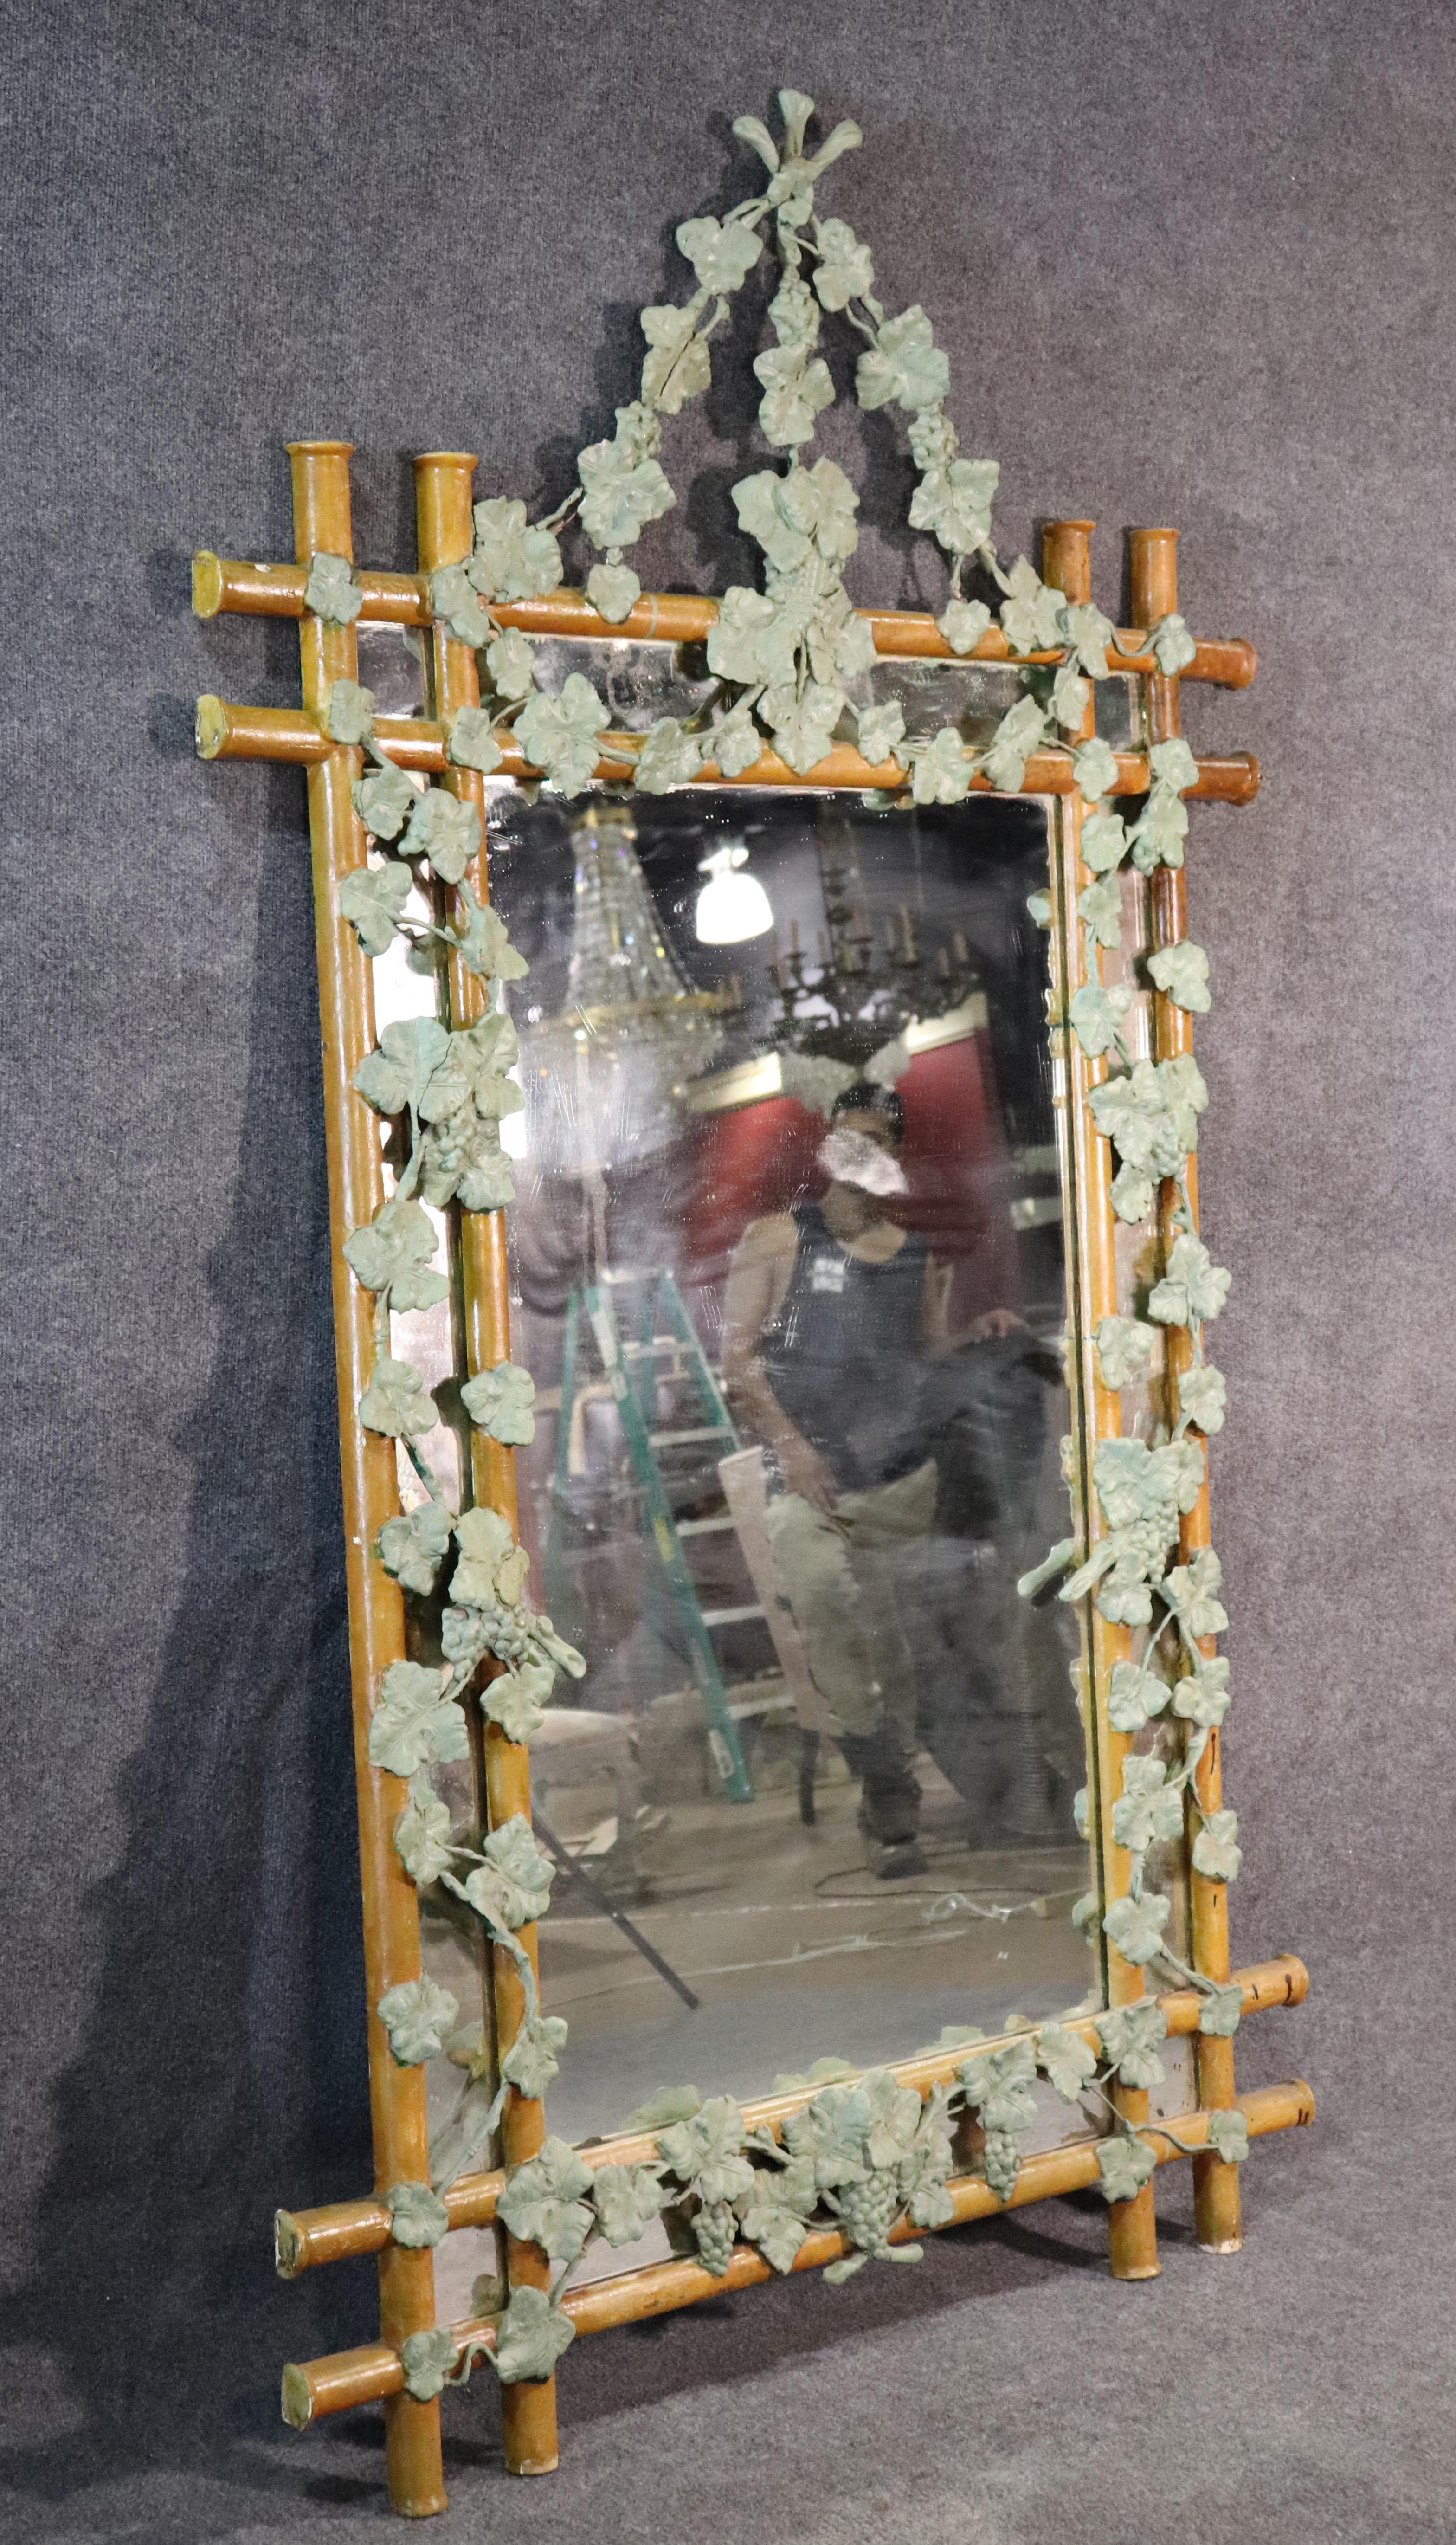 Il s'agit d'un rare miroir en faux bois de fabrication française avec un magnifique lierre peint en vert entourant le cadre. Il s'agit d'un miroir sophistiqué avec des détails incroyables et une grande patine.
Mesures : 82 de haut x 48,5 de large x